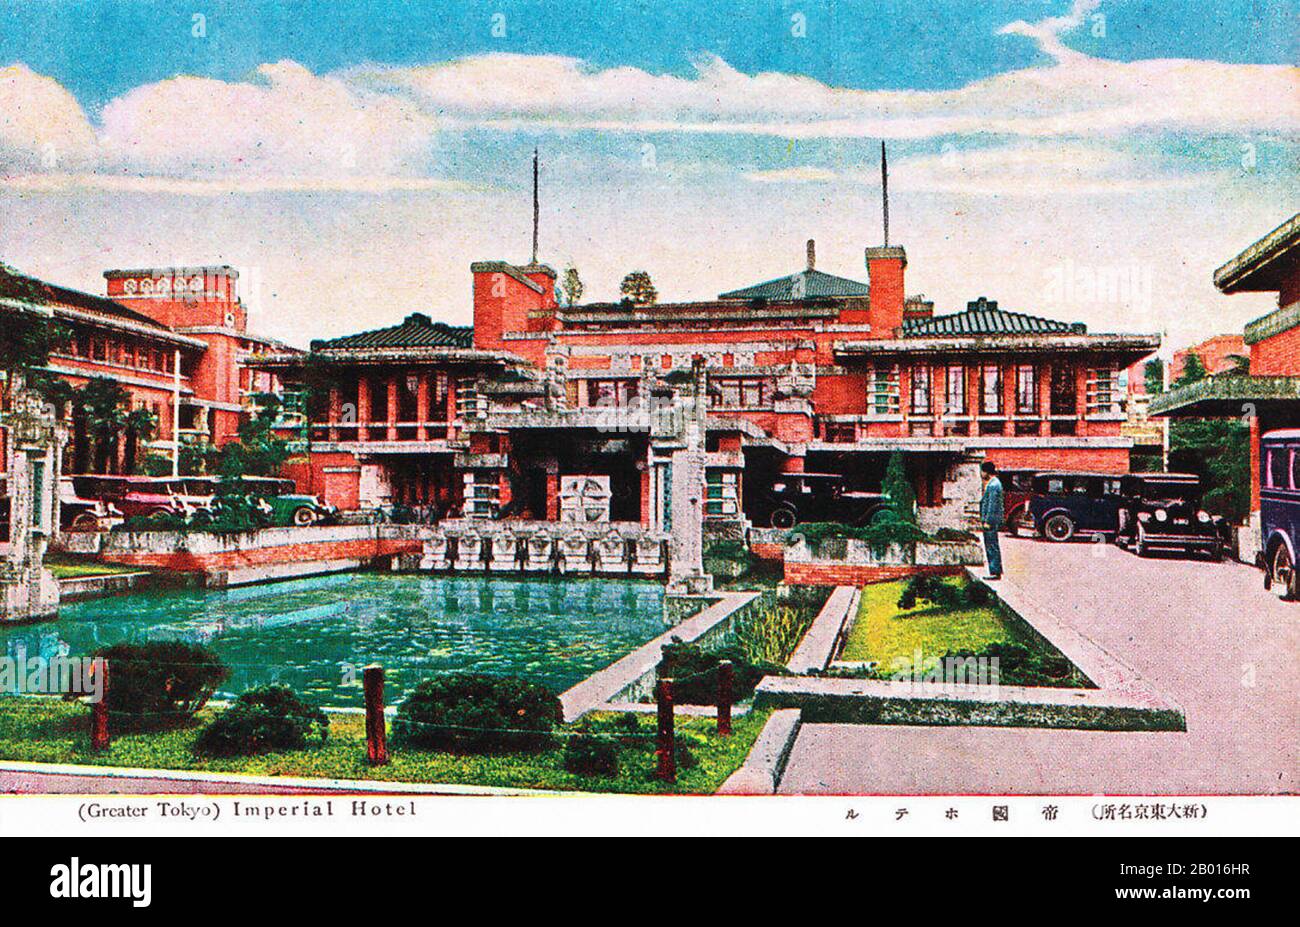 Japon : '(Great Tokyo) Imperial Hotel'.Carte postale, c.1920. Le deuxième hôtel impérial, construit entre 1915 et 1923, était le plus connu des bâtiments de Frank Lloyd Wright au Japon.Il a été conçu en gros dans la forme de son propre logo, avec les ailes de la chambre d'hôtes formant la lettre 'H'.Il a survécu au grand tremblement de terre de Kanto en 1923, ainsi qu'à la Seconde Guerre mondiale, et a été démoli en 1968. Banque D'Images